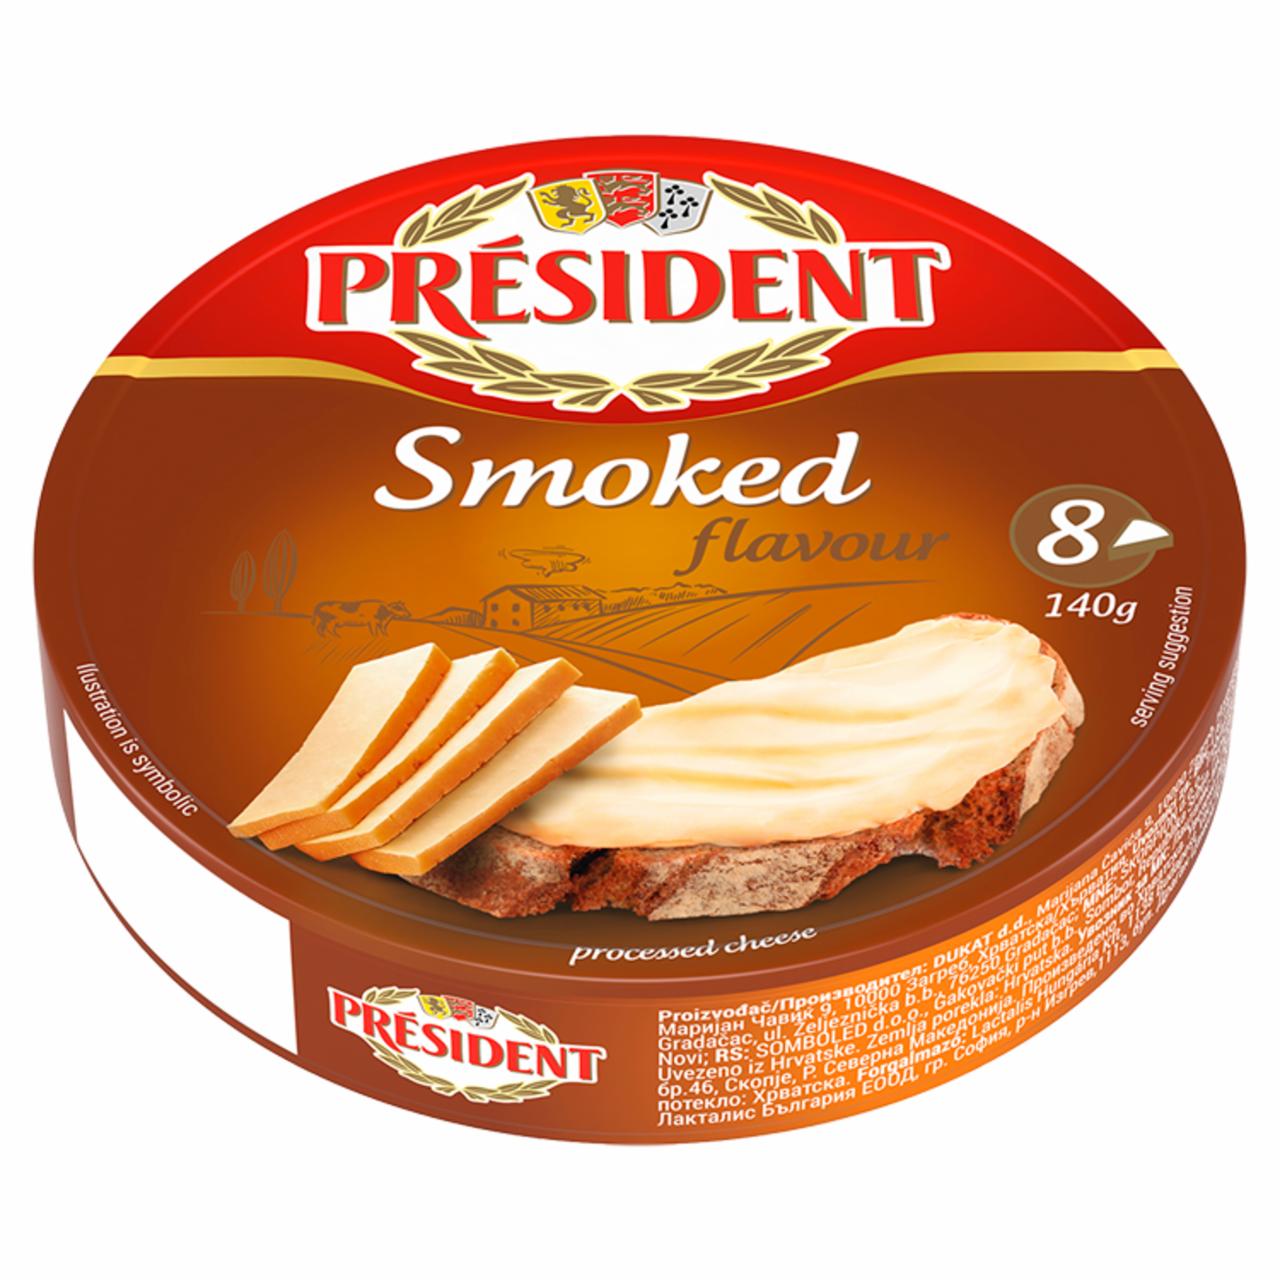 Képek - President ömlesztett füstölt sajt 8 x 17,5 g (140 g)